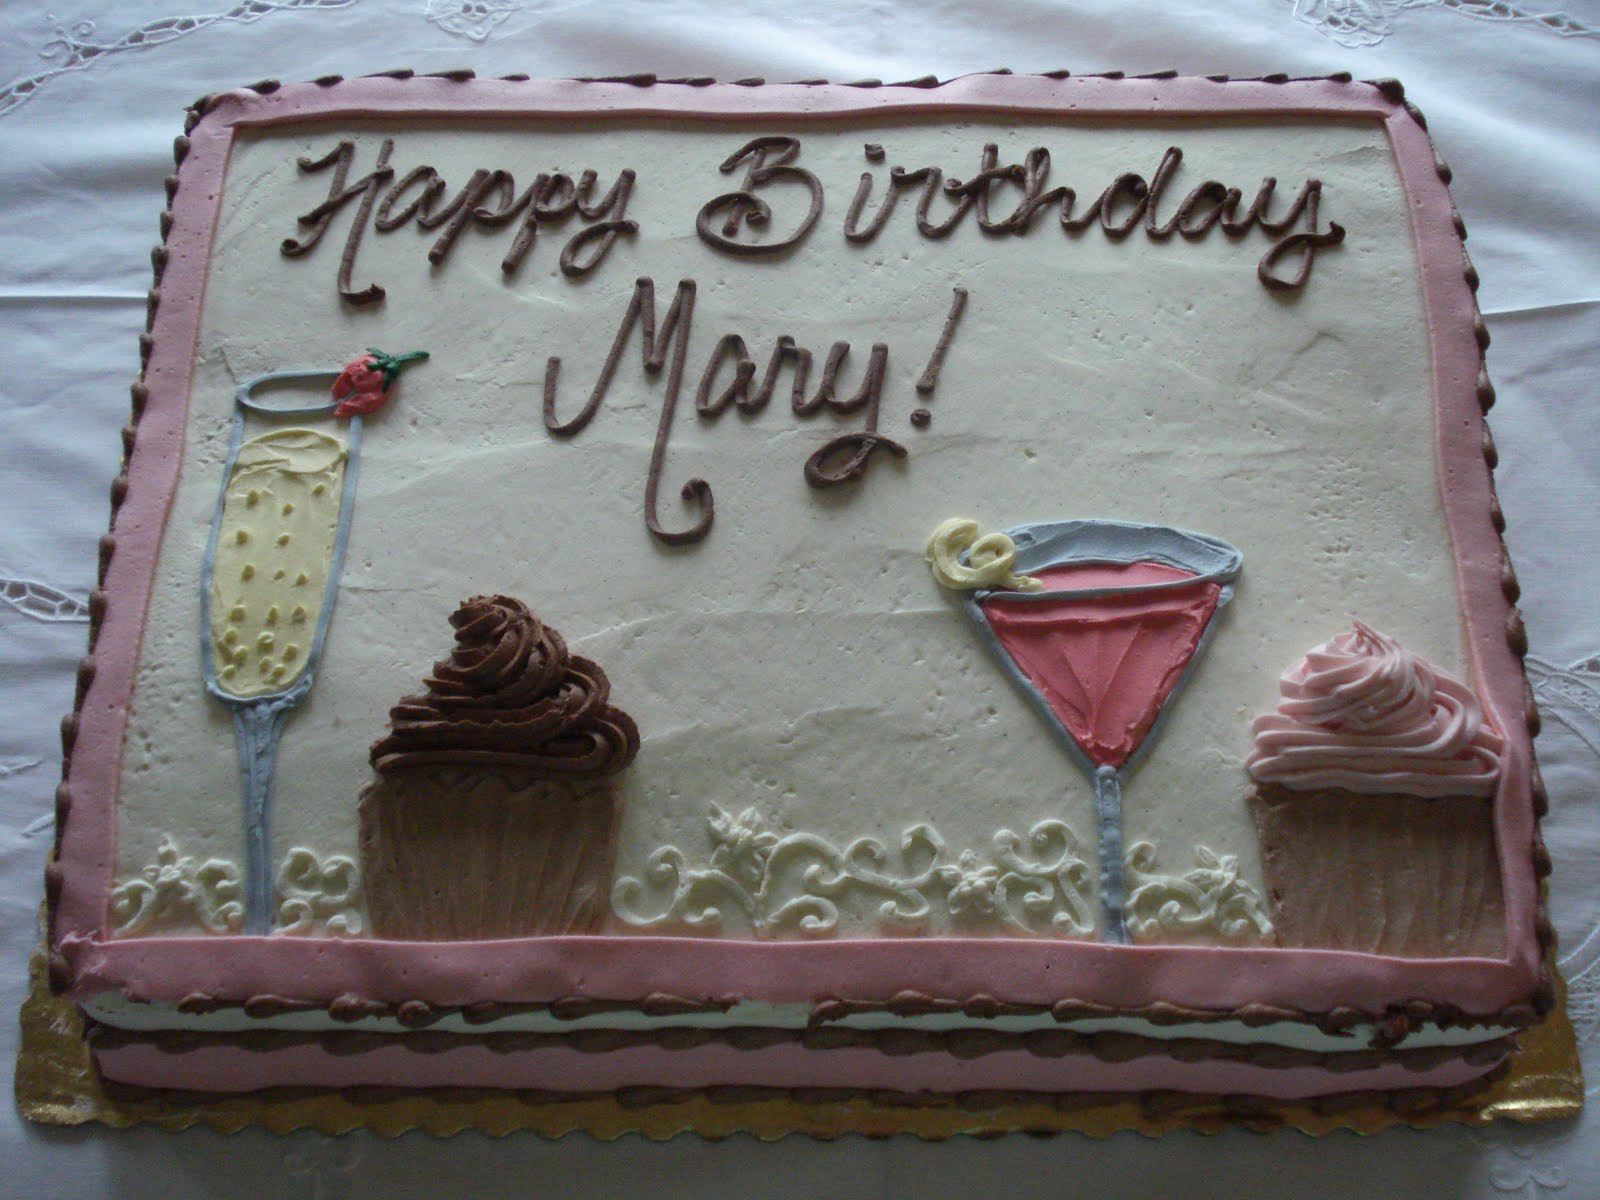 Happy Birthday Mary Cake
 Happy Birthday Mary